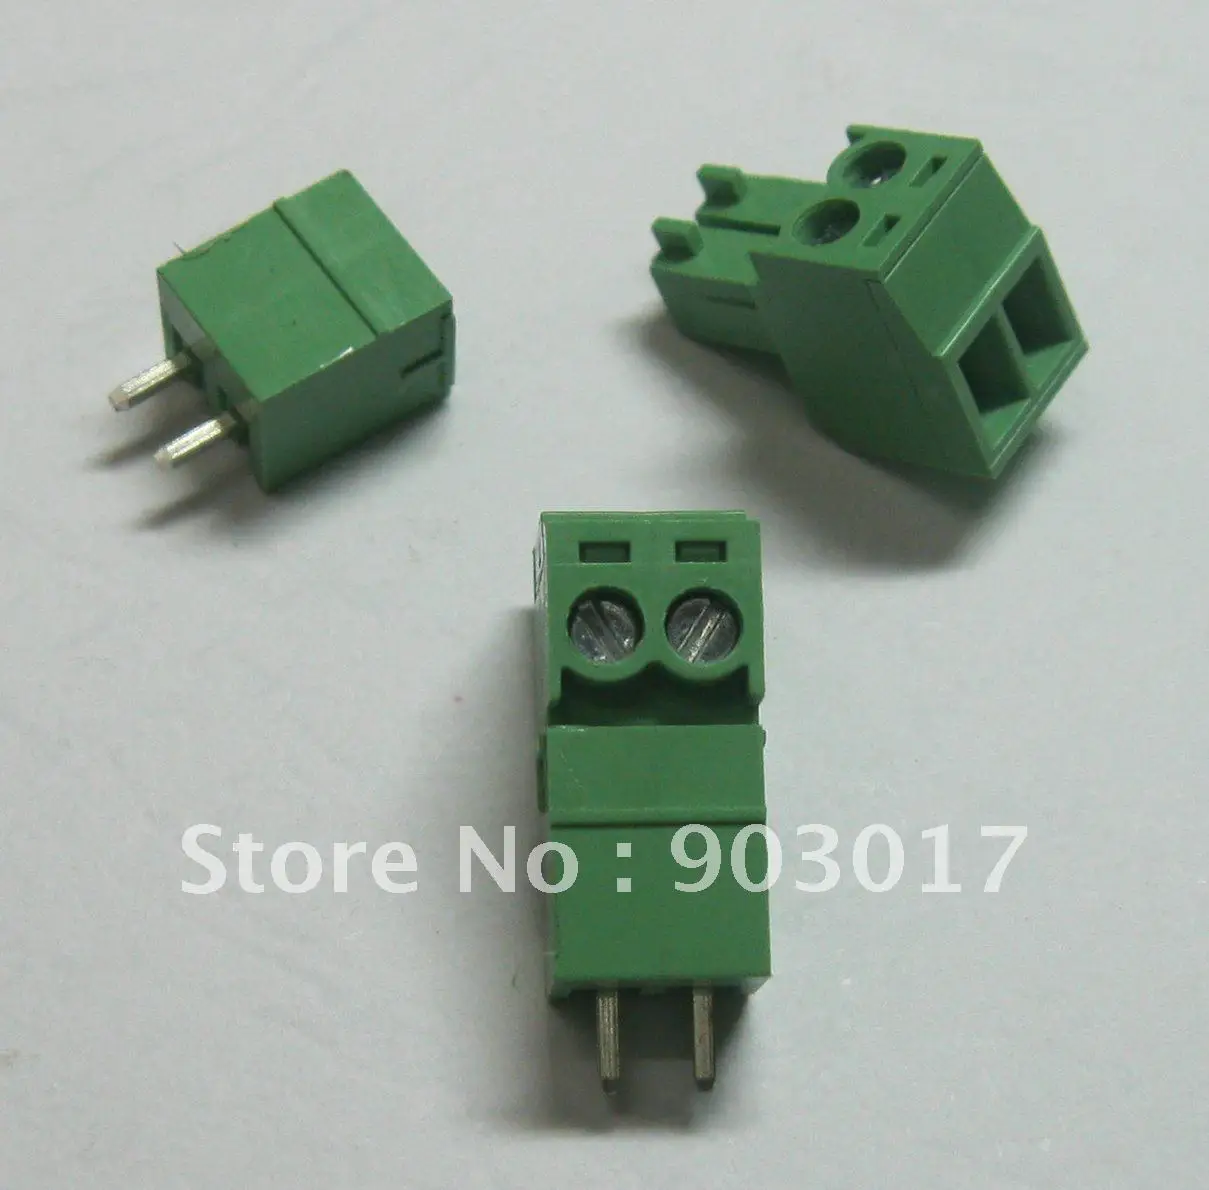 Шаг 3,5 мм Винт Клеммная колодка Разъем зеленый цвет подключаемый тип с pin 2 pin/way 30 шт